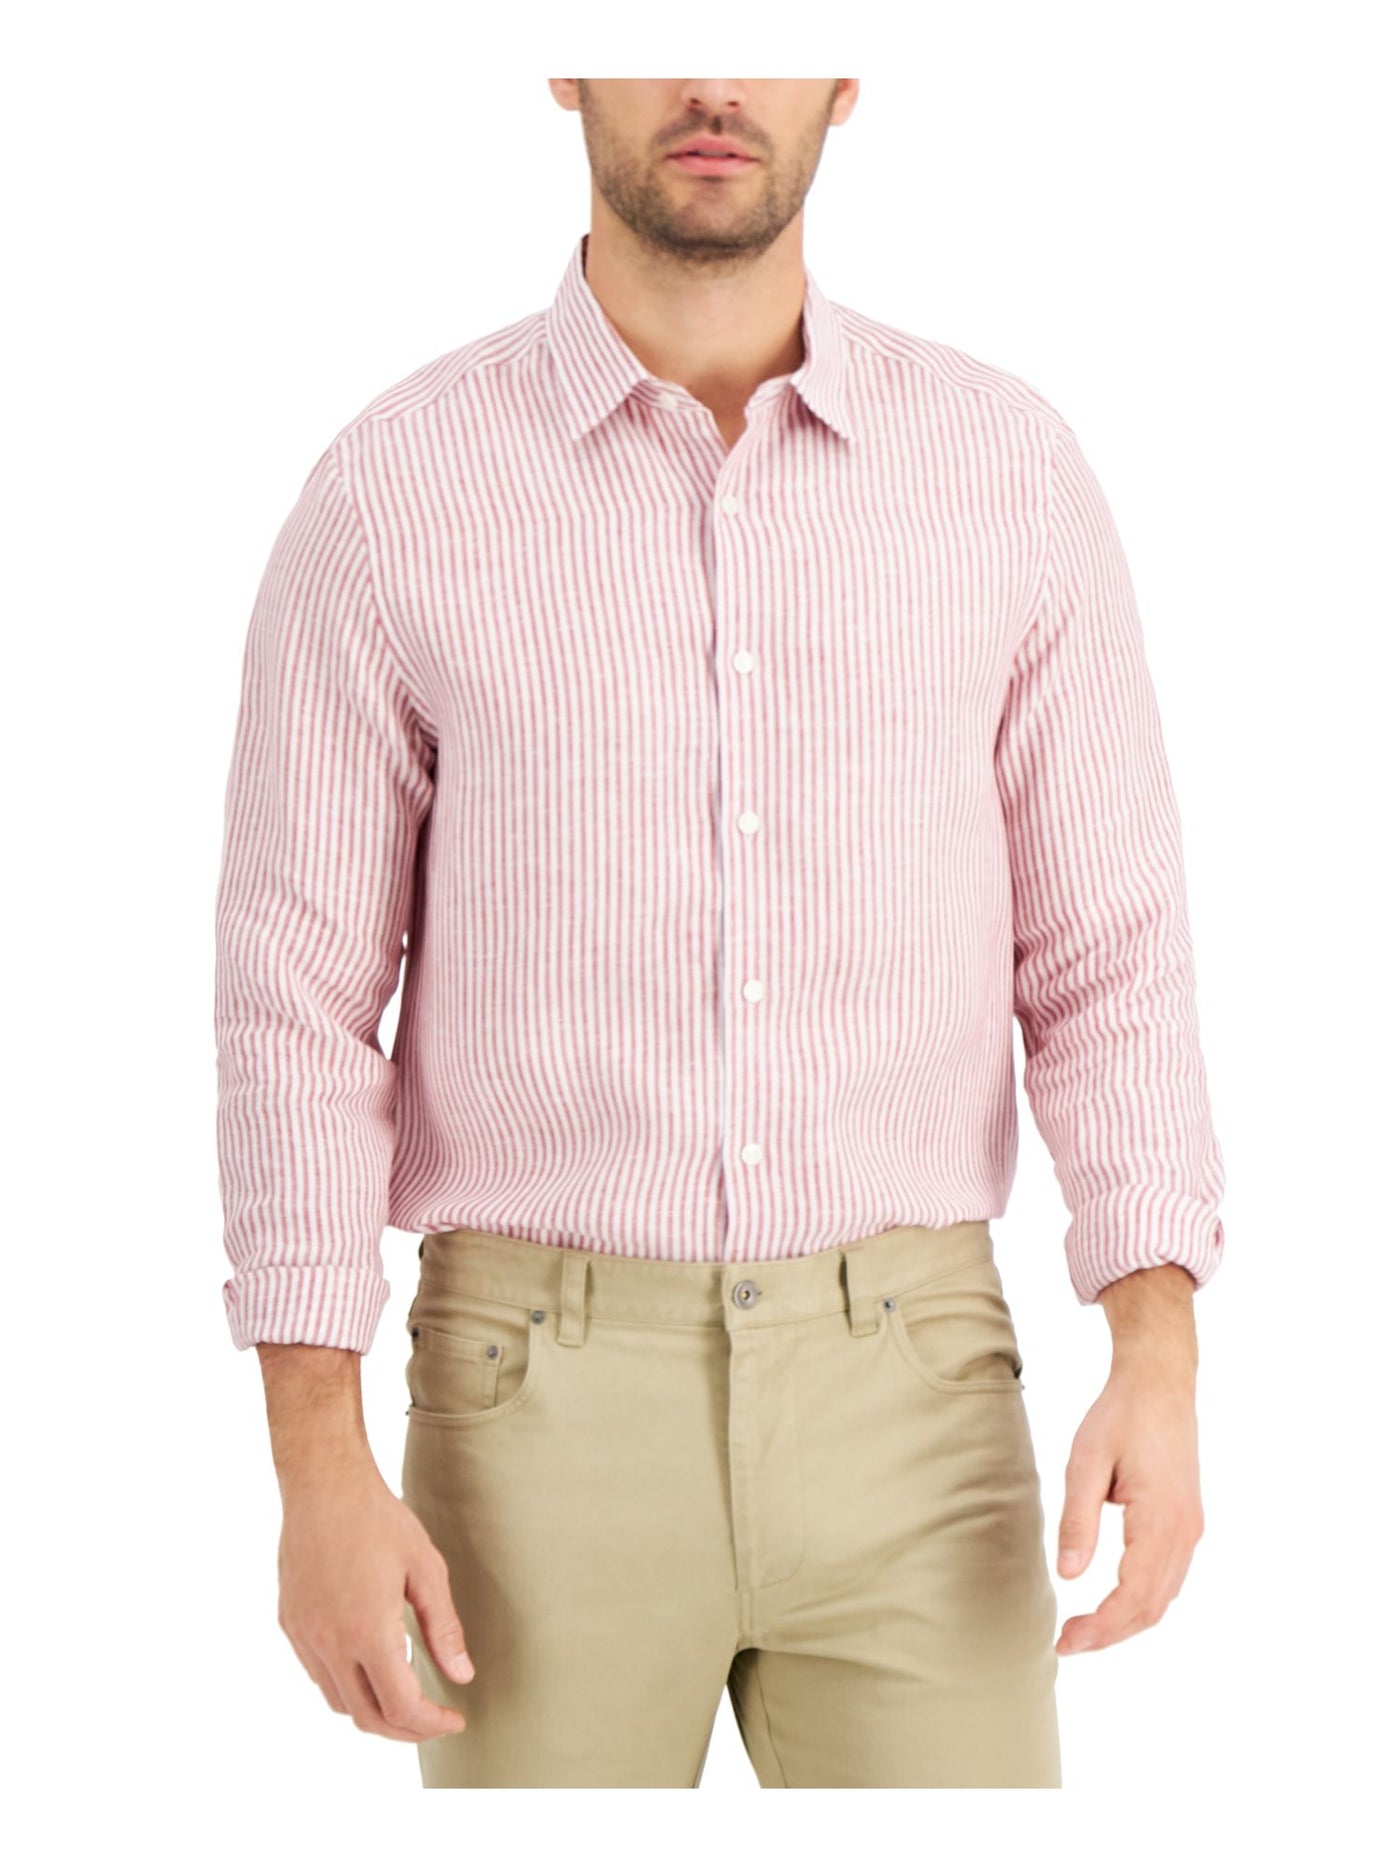 TASSO ELBA Mens Catalo Red Striped Spread Collar Classic Fit Button Down Shirt L